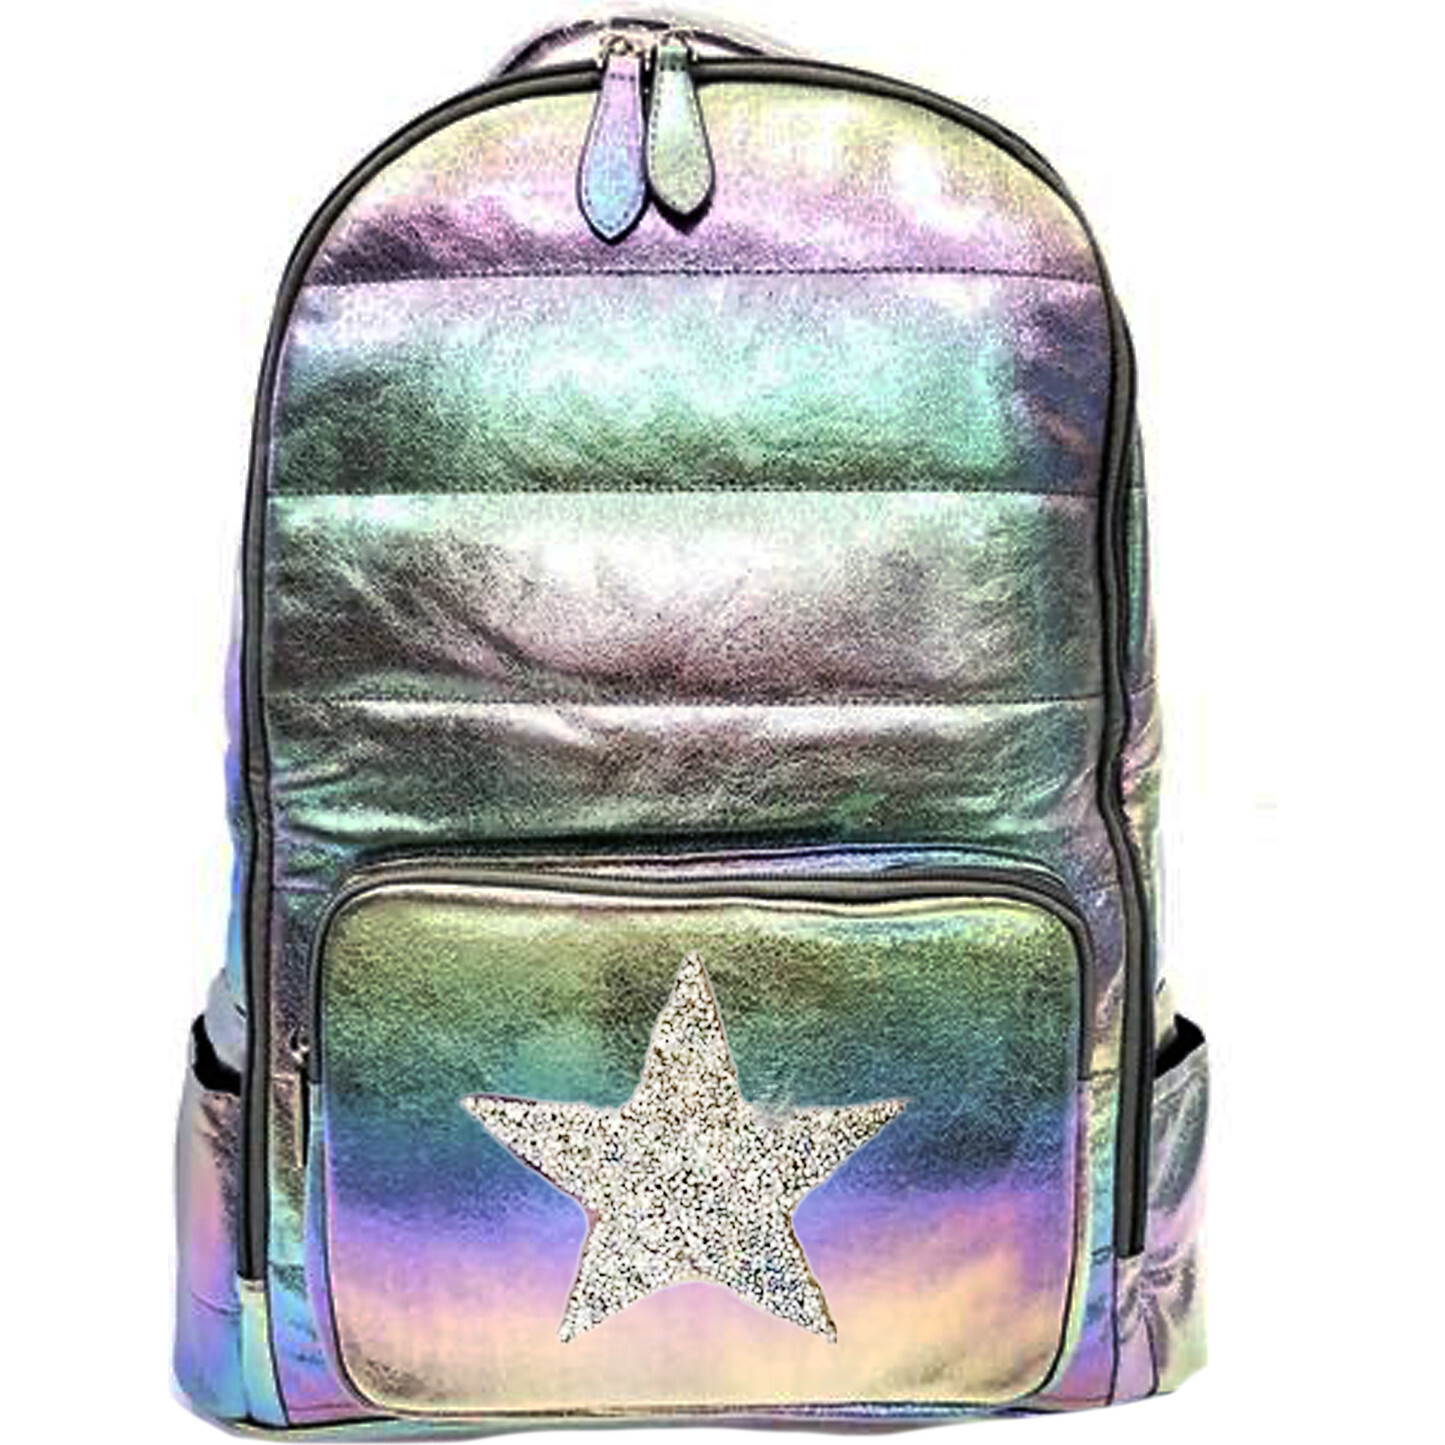 Bari Lynn Iridescent Backpack, Purple Star Maisonette